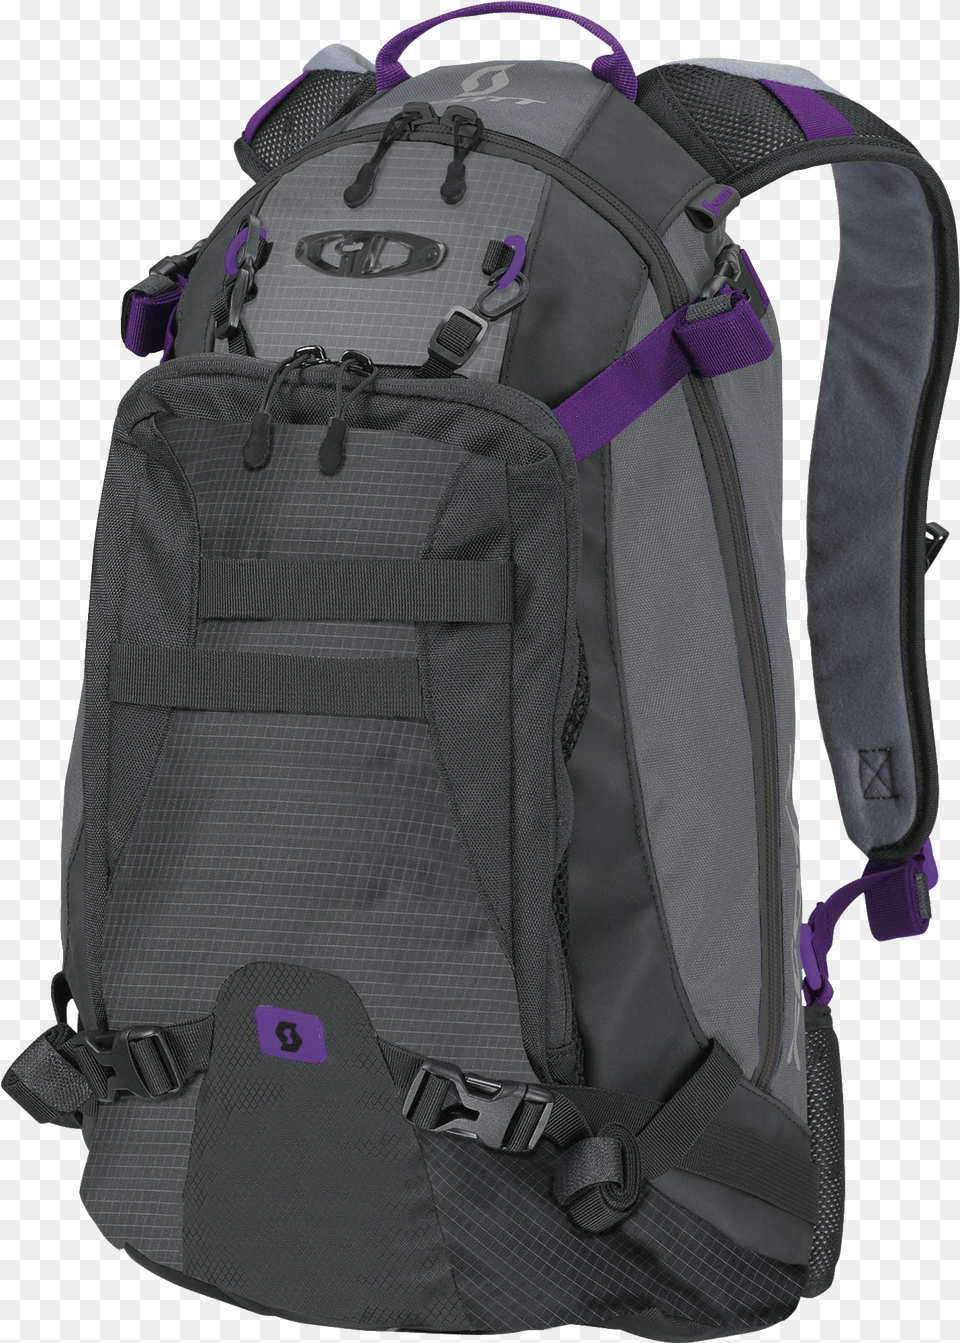 Back Pack, Backpack, Bag Png Image